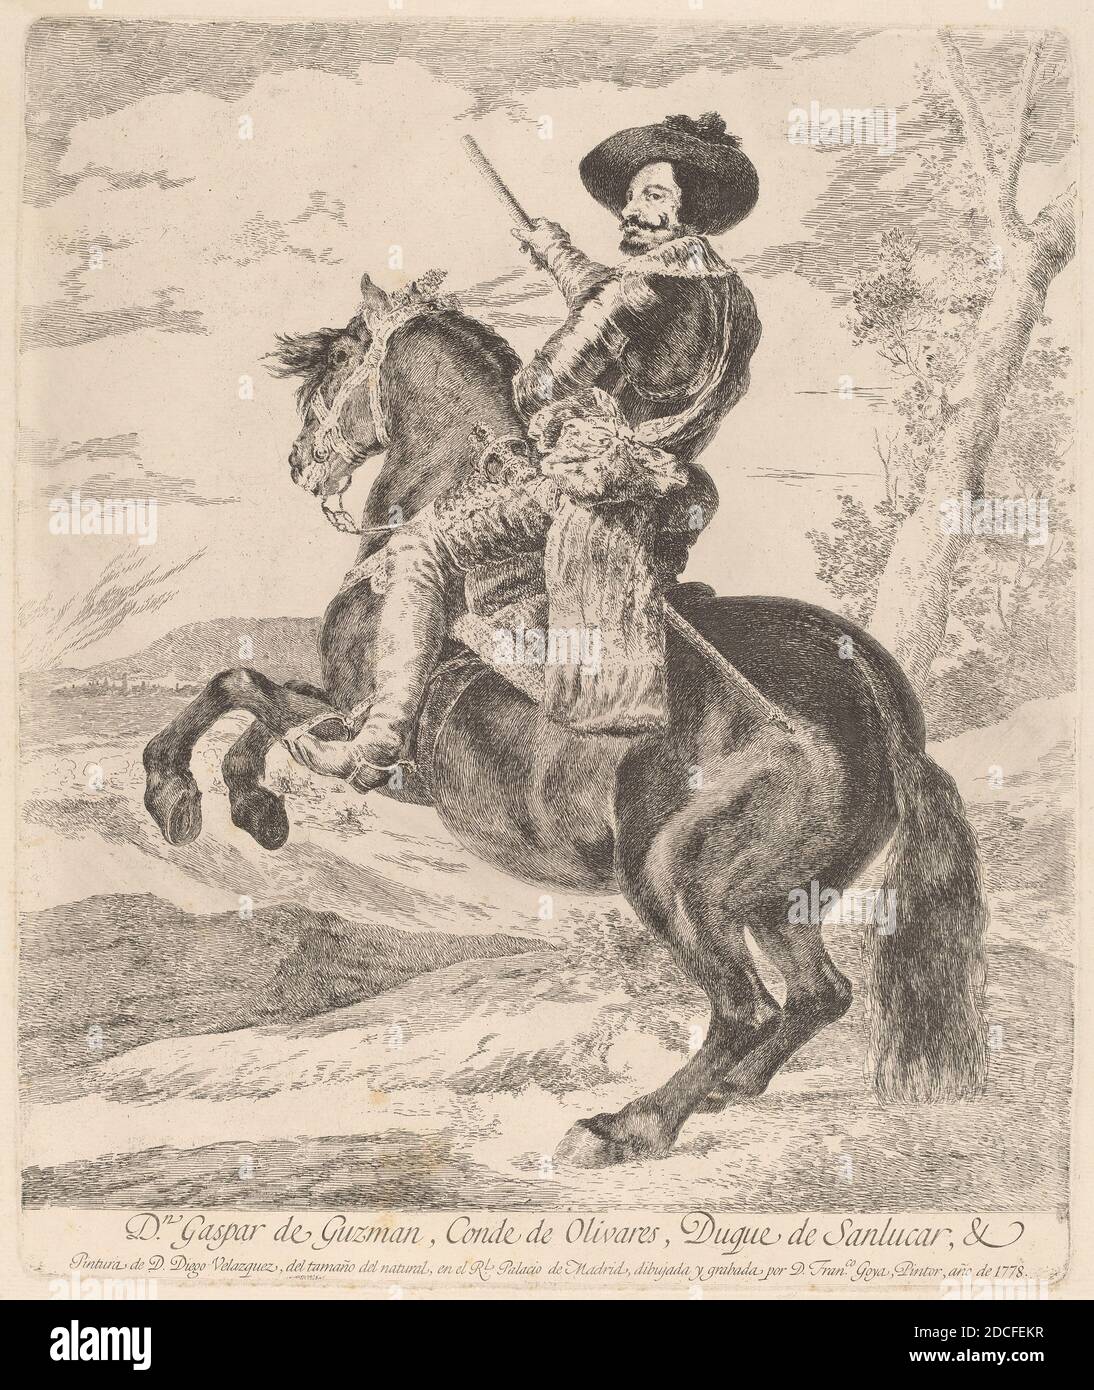 Francisco de Goya, (artista), spagnolo, 1746 - 1828, Diego Velázquez, (artista dopo), spagnolo, 1599 - 1660, Gaspar de Guzman, Conde Duque de Olivares, 1778, incisione su carta pesante Foto Stock